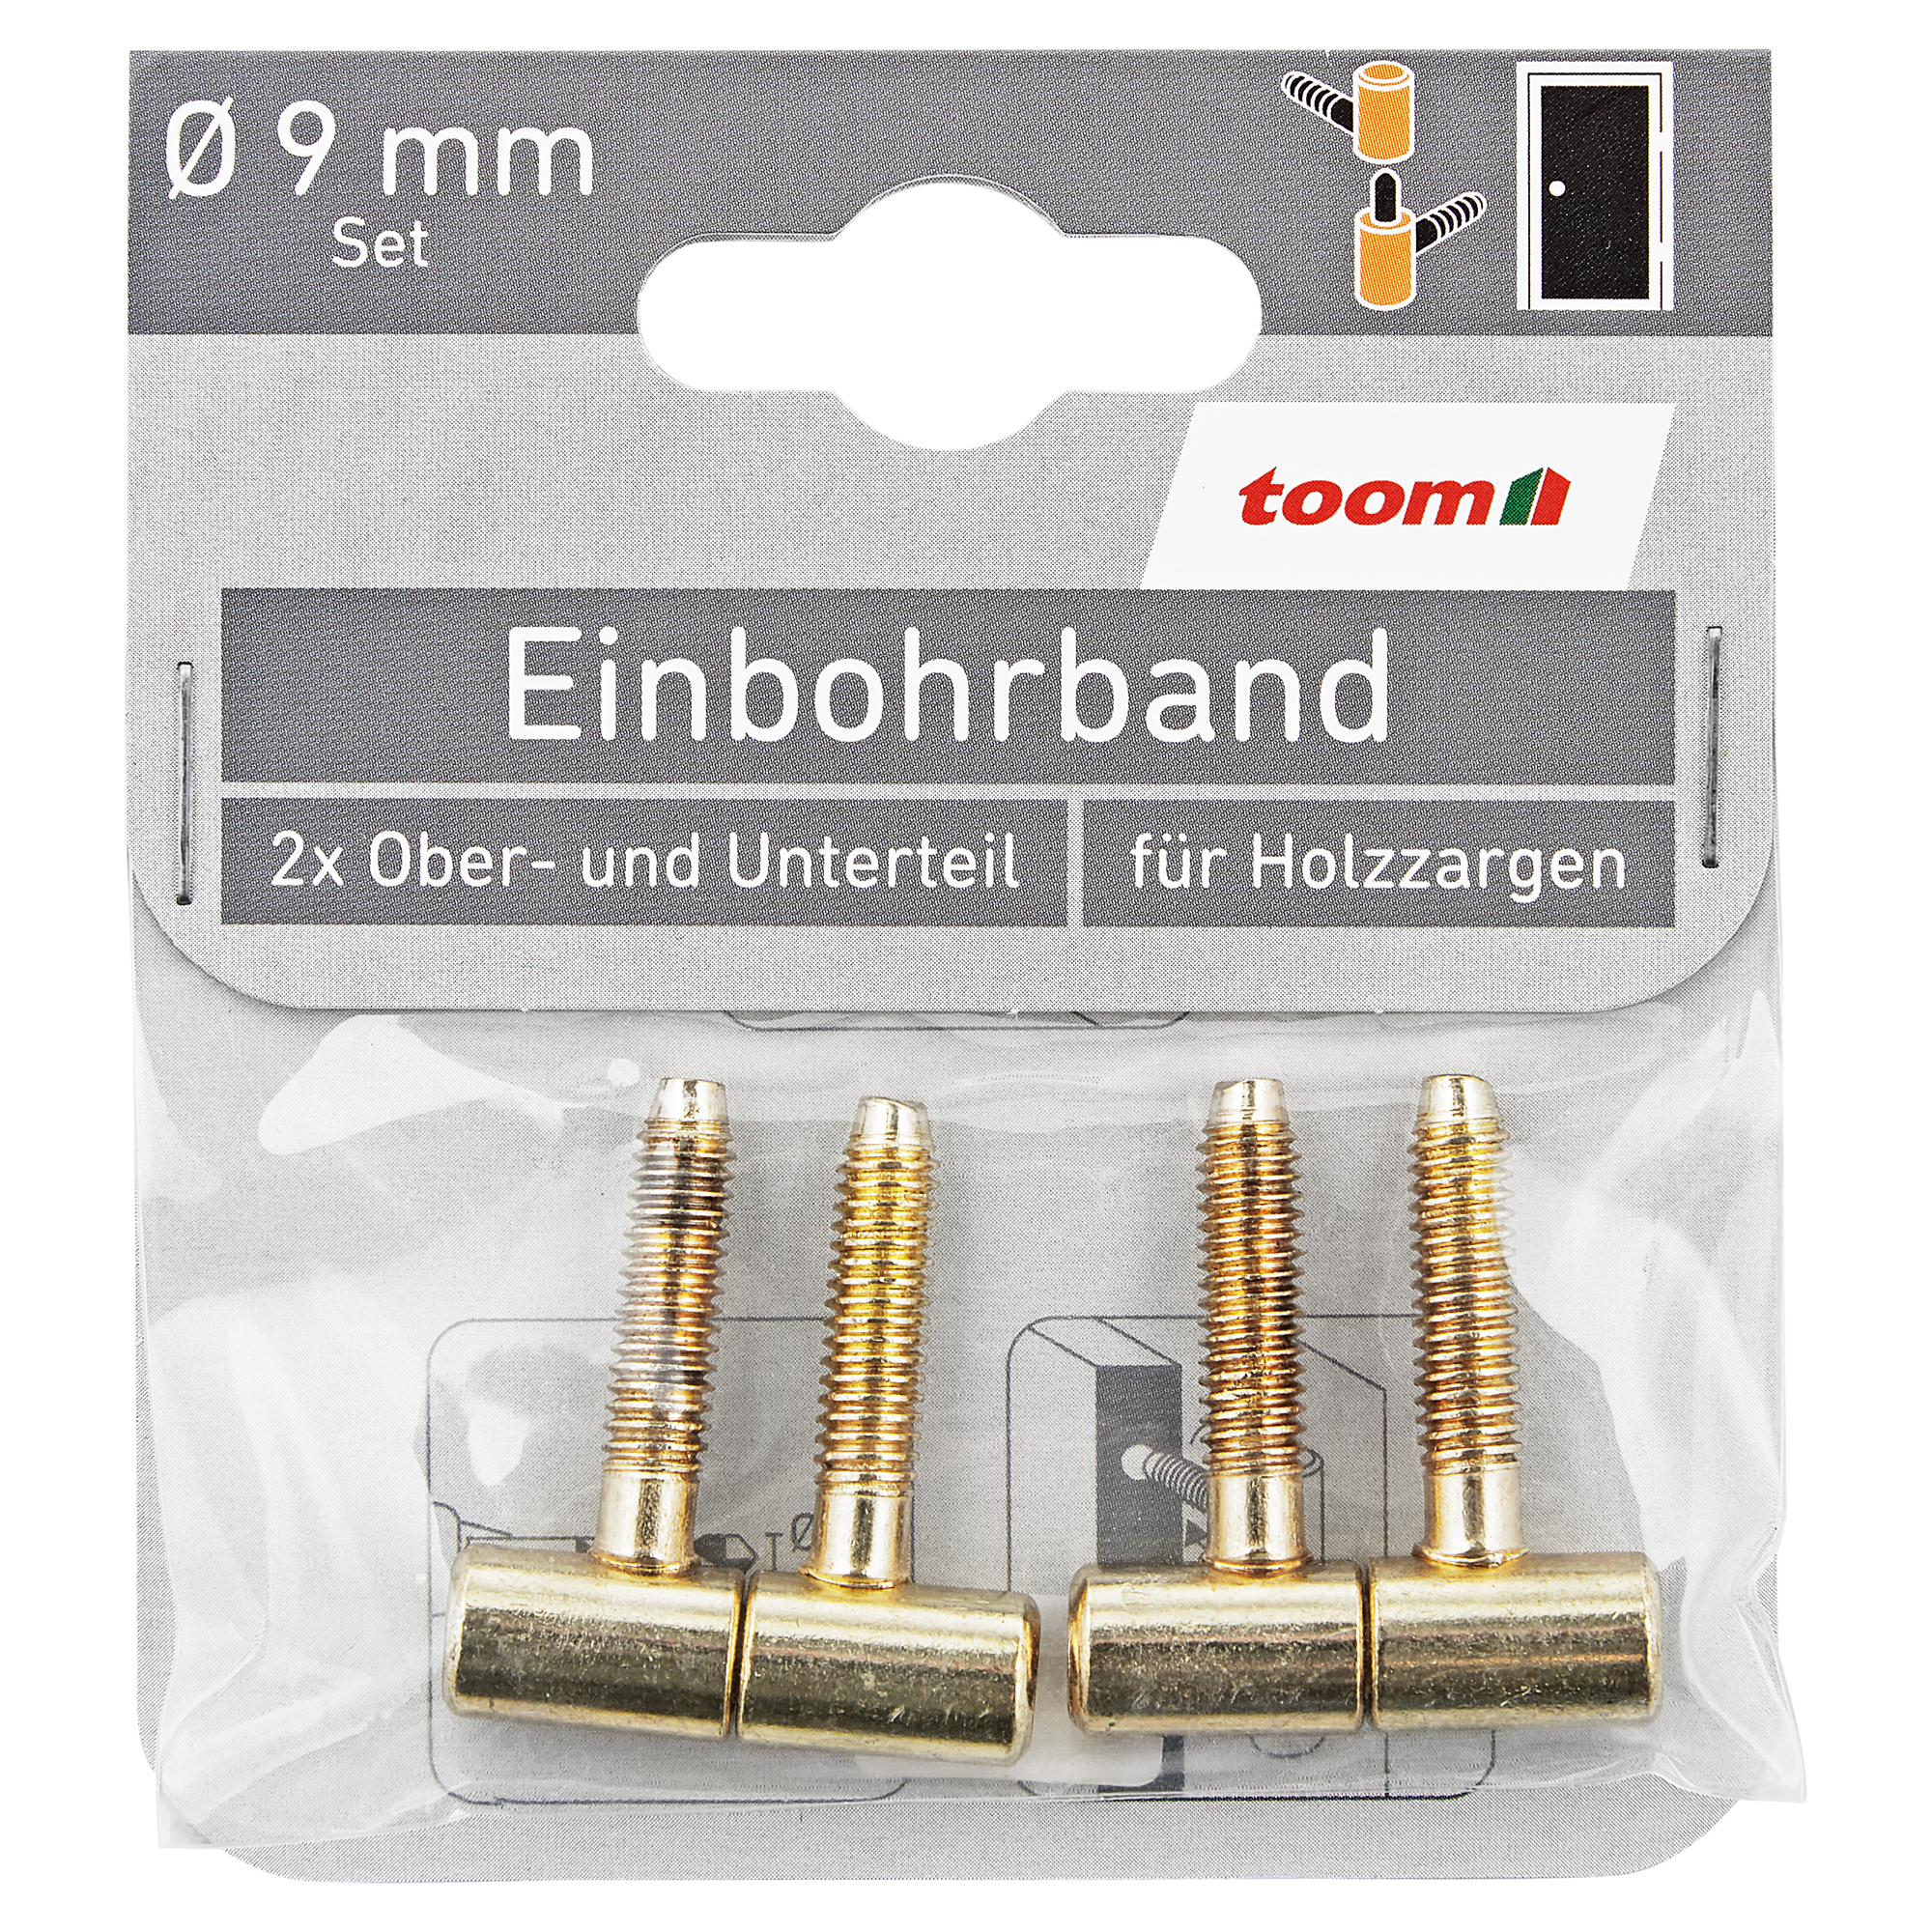 Einbohrbänder vermessingt 2x Ober- und Unterteil Ø 9 mm + product picture